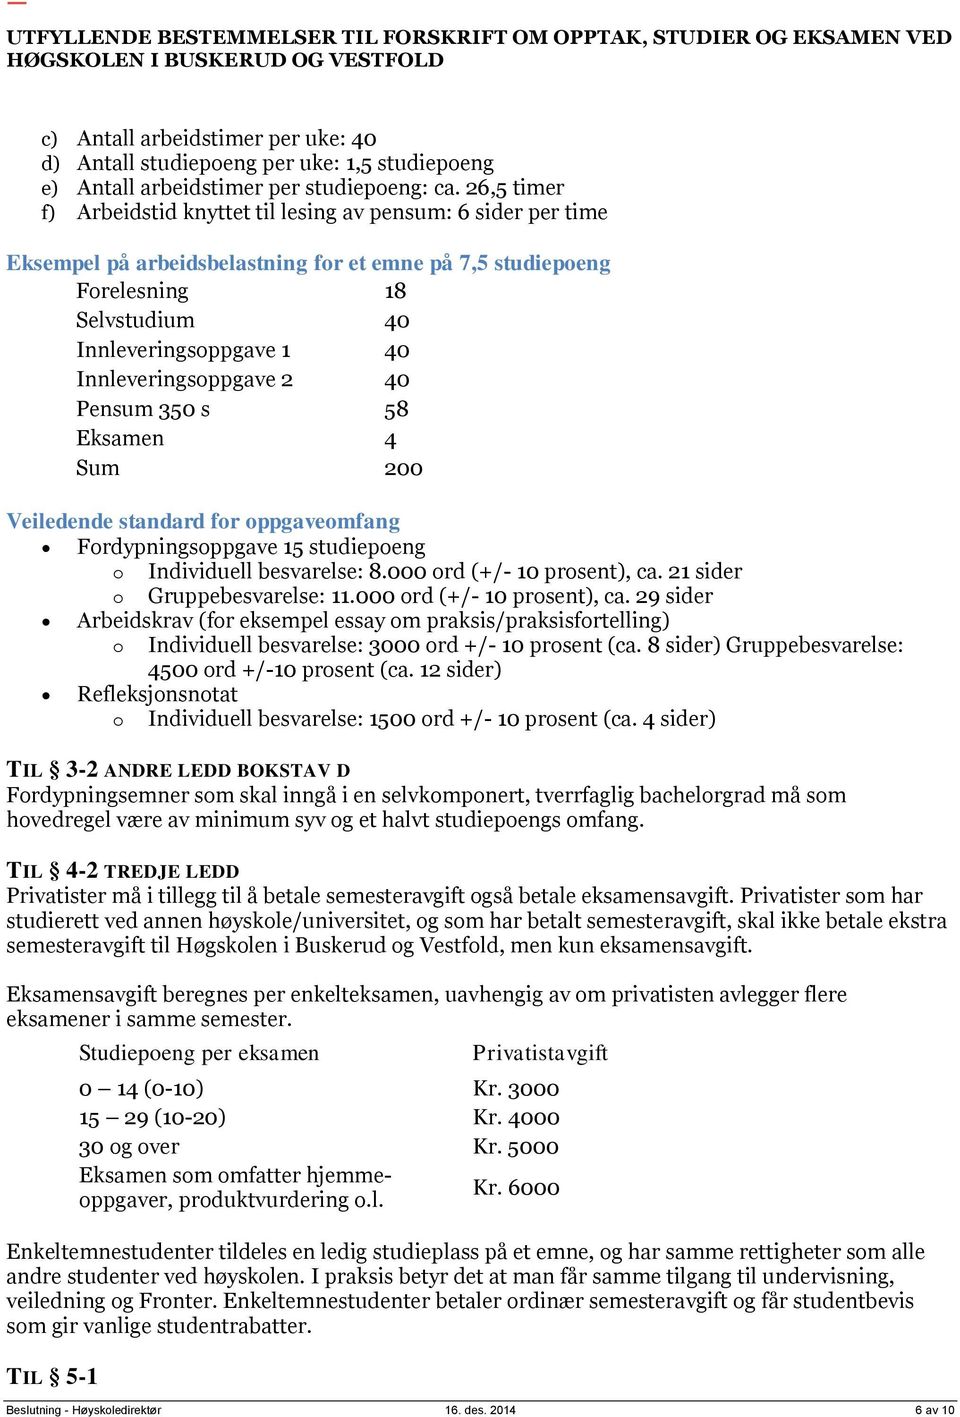 Innleveringsoppgave 2 40 Pensum 350 s 58 Eksamen 4 Sum 200 Veiledende standard for oppgaveomfang Fordypningsoppgave 15 studiepoeng o Individuell besvarelse: 8.000 ord (+/- 10 prosent), ca.